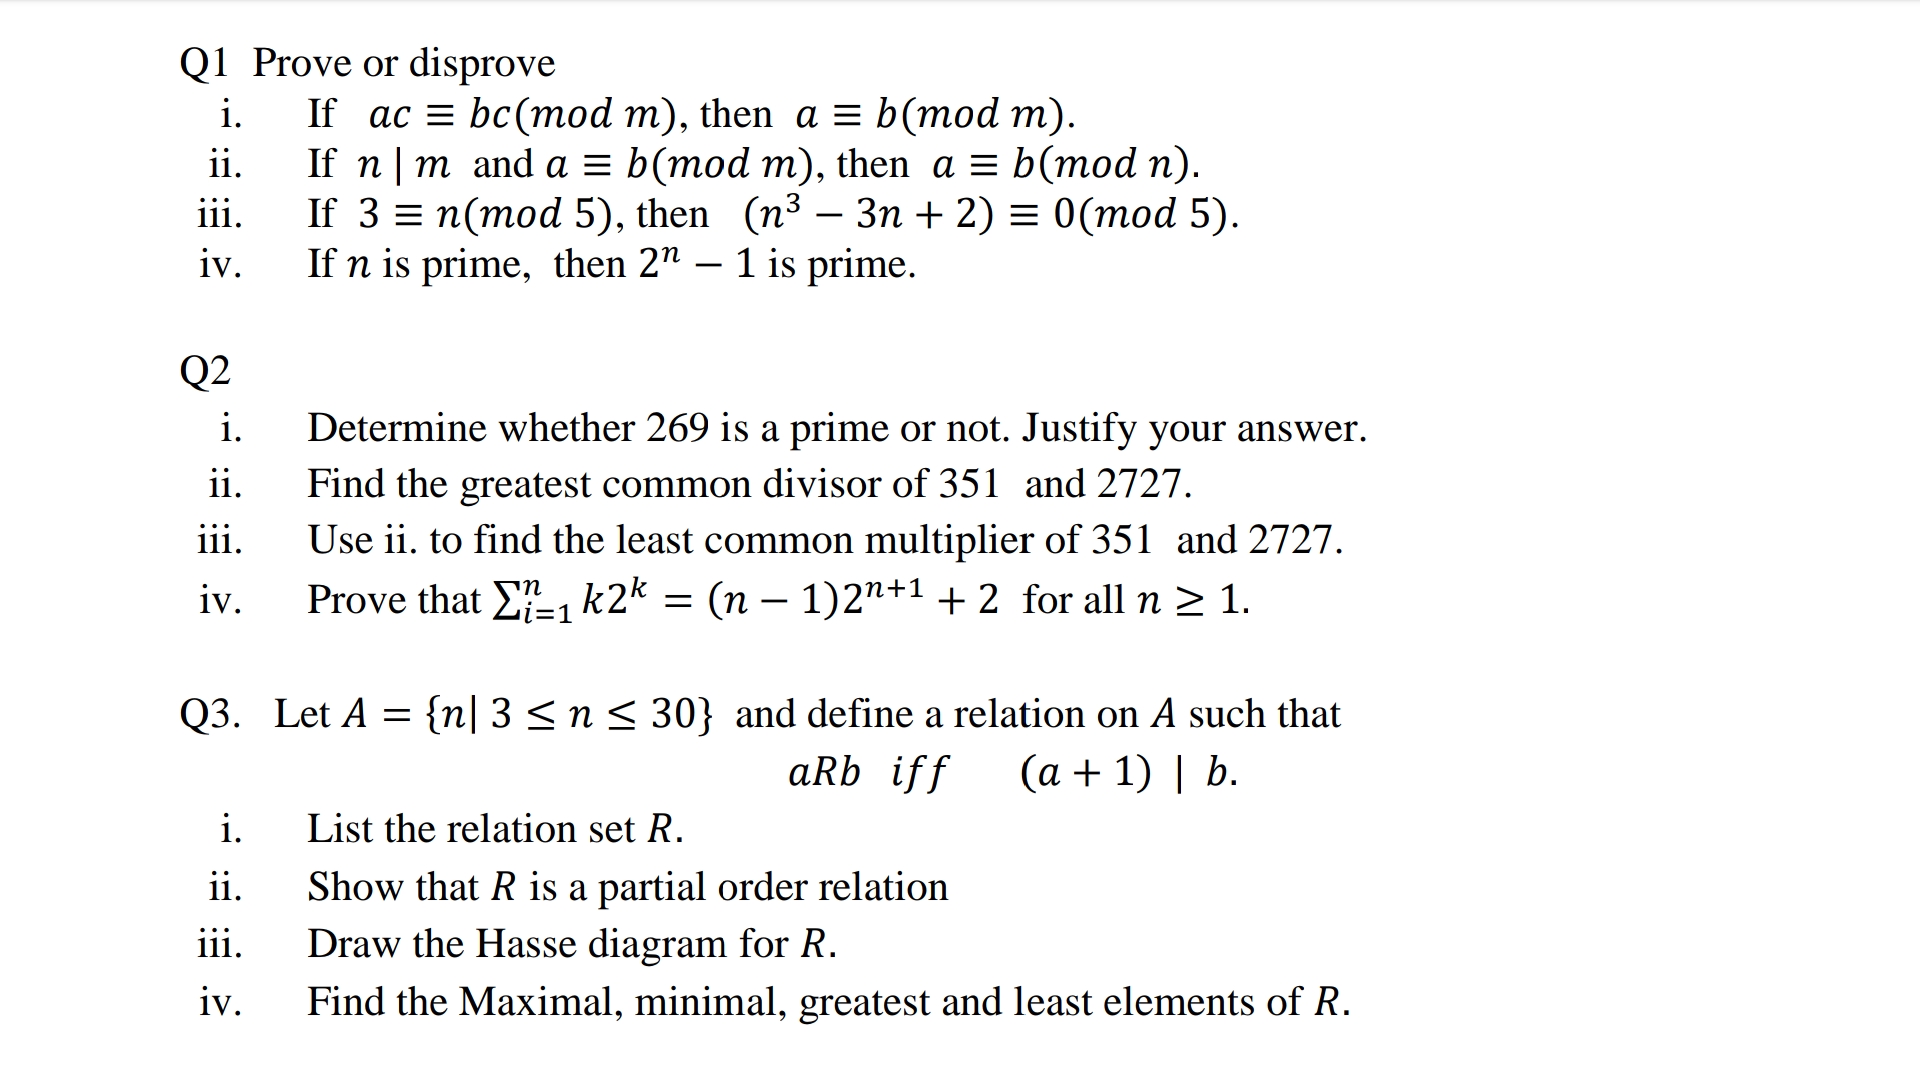 Prove or disprove
If ac = bc(mod m), then a = b(mod m).
If n| m and a = b(mod m), then a = b(mod n).
If 3%3D п(тоd 5), then (n3 — Зп + 2) %3D 0(тod 5).
If n is prime, then 2" – 1 is prime.
-
